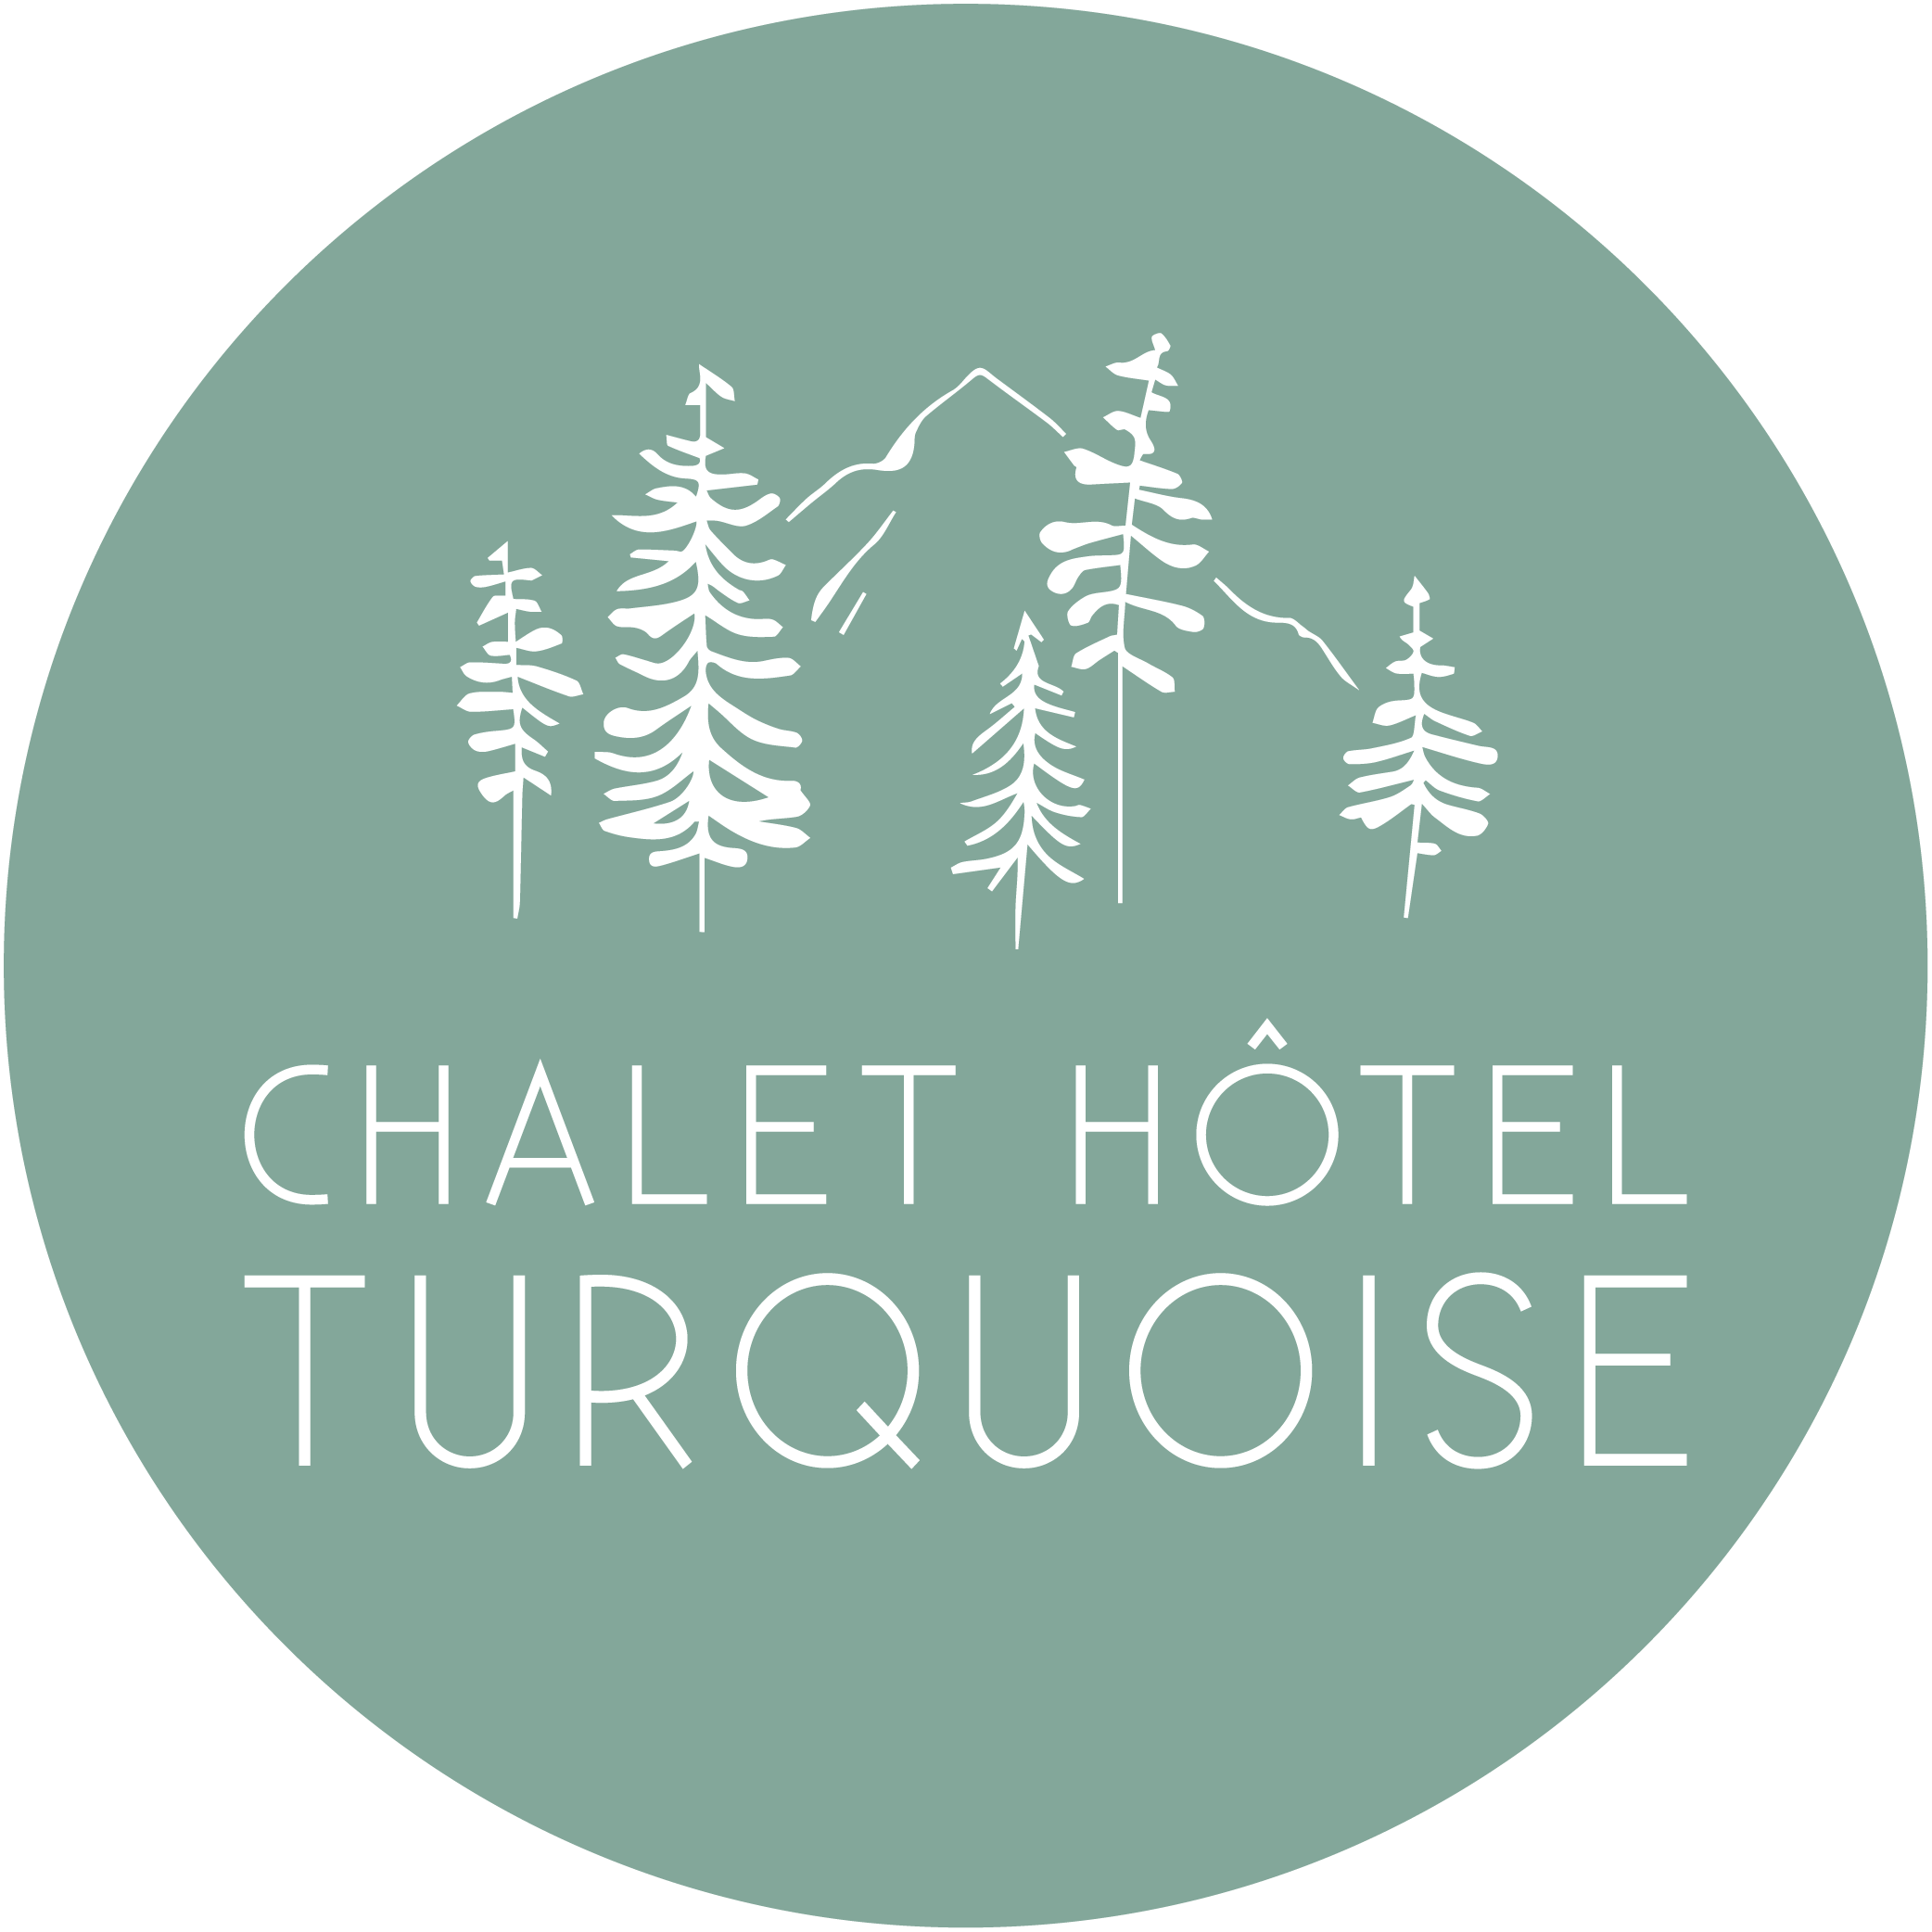 Chalet Hôtel Turquoise